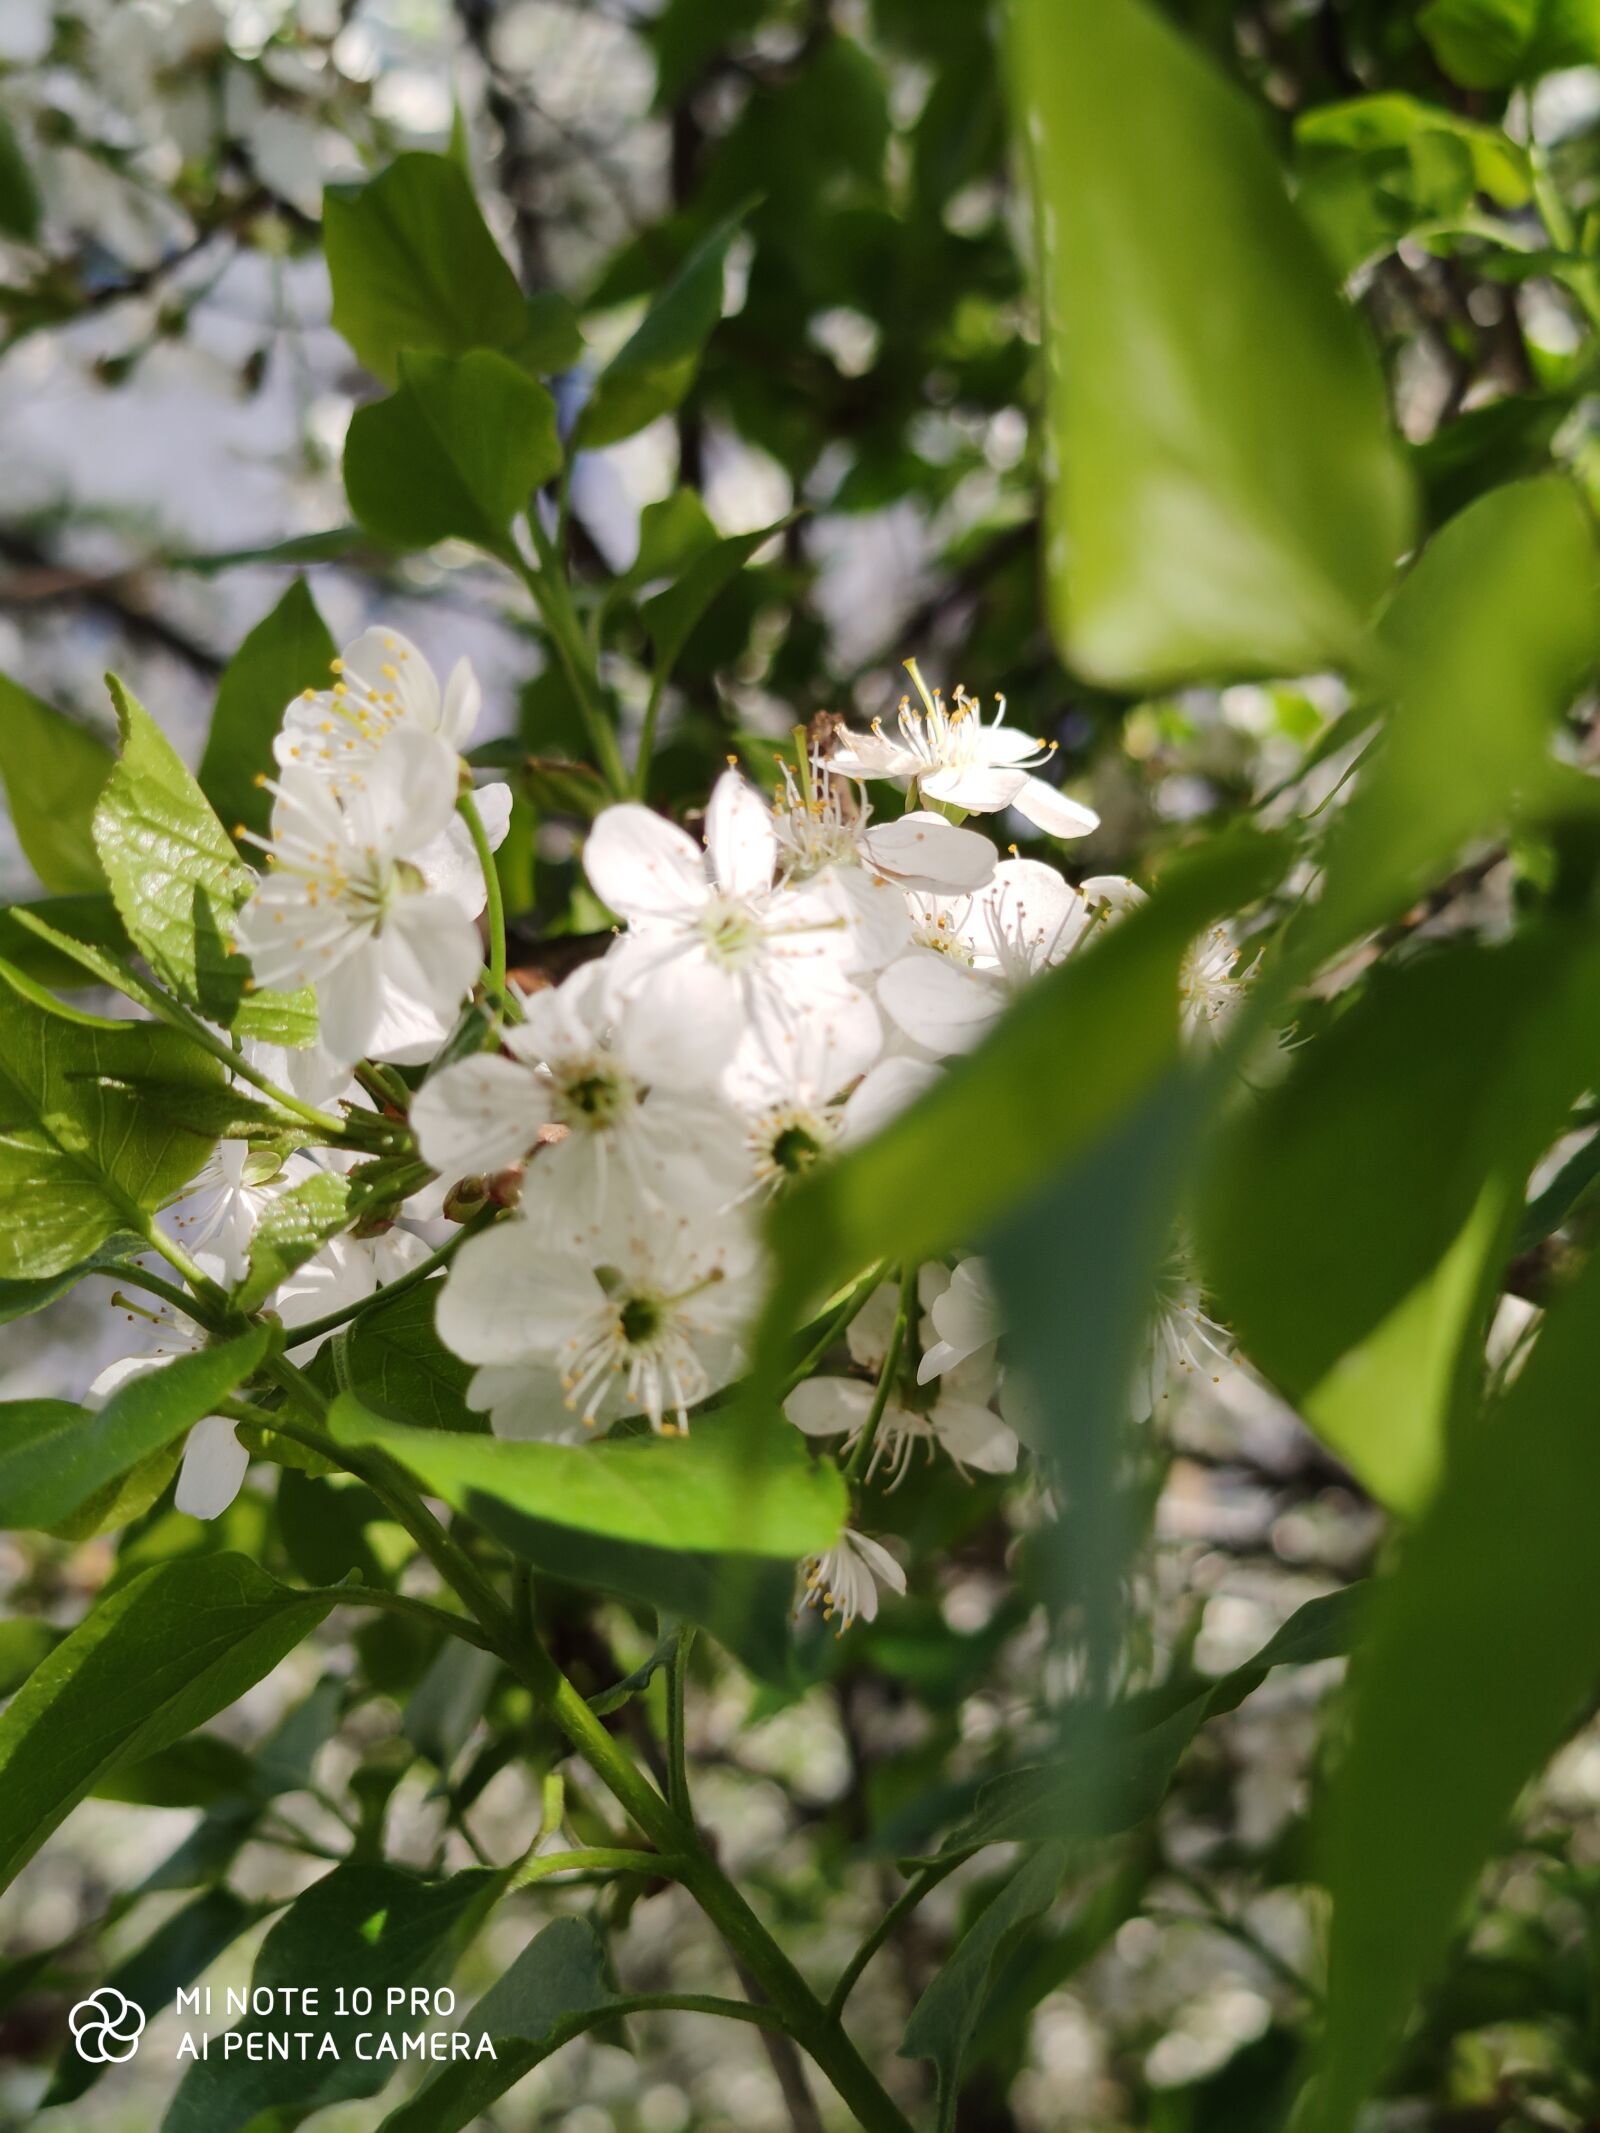 Xiaomi Mi Note 10 Pro sample photo. весна, природа, дерево photography